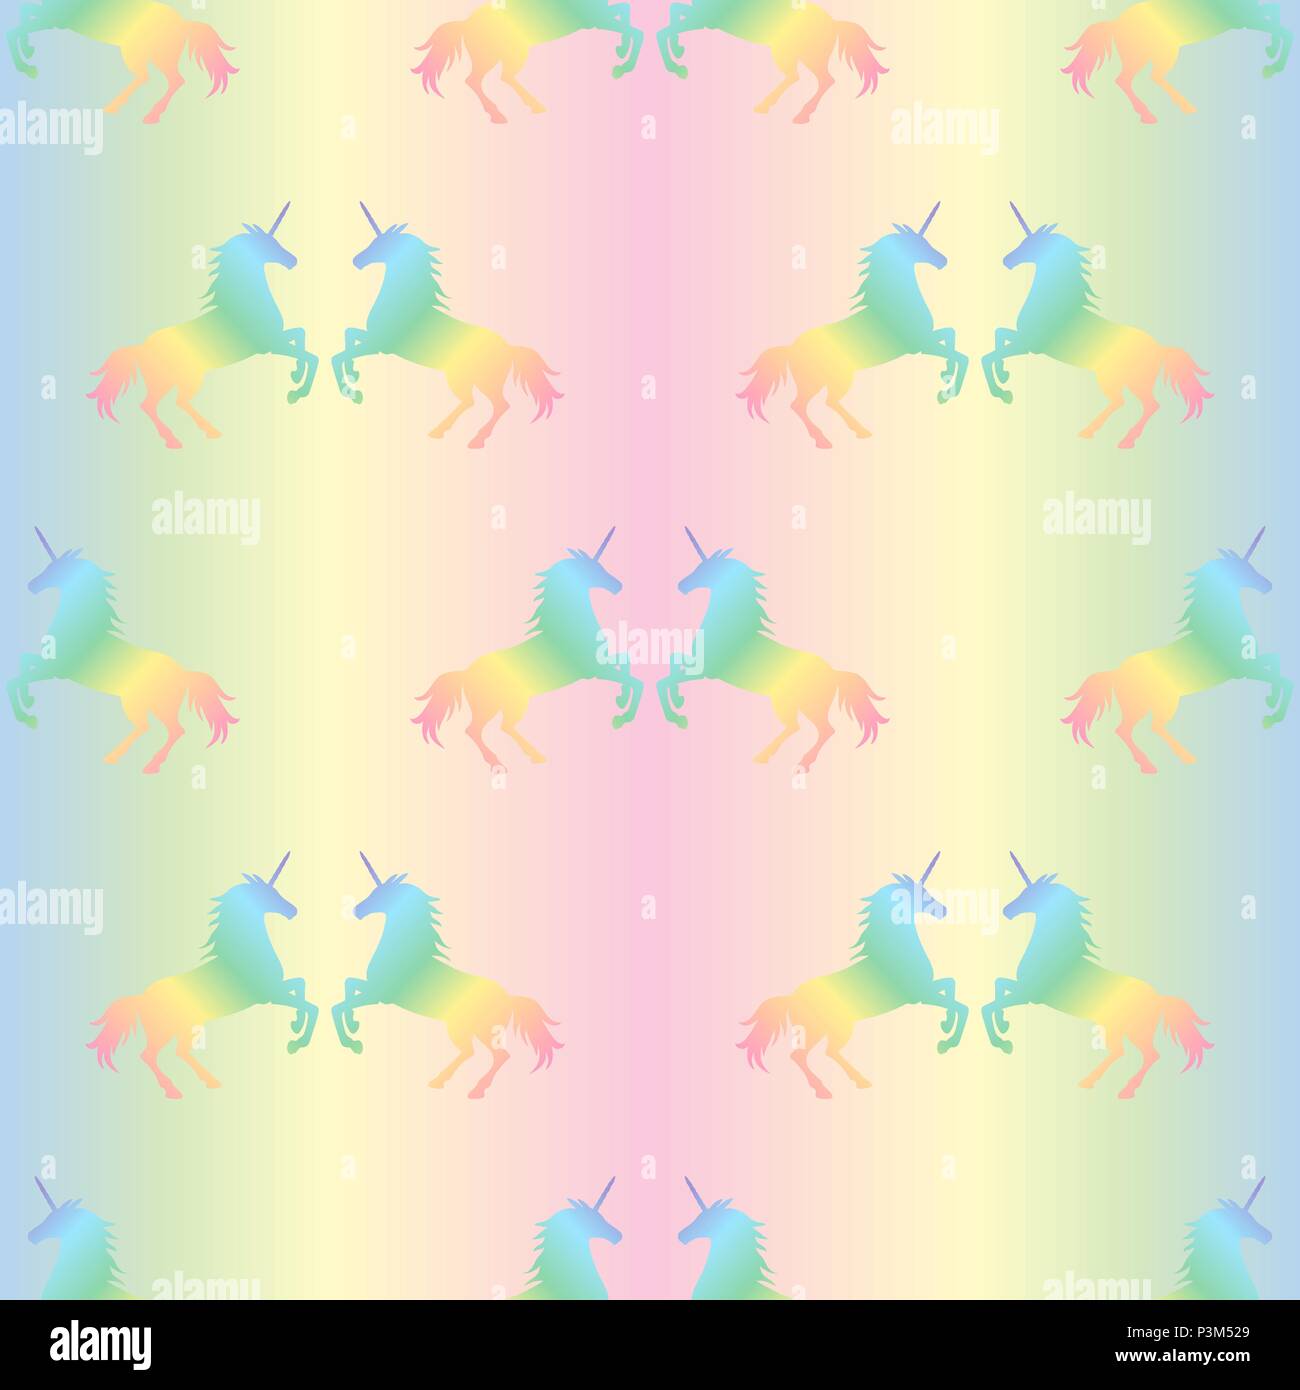 Vector illustration of seamless pattern from rainbow unicorns couple on pastel rainbow background. Unicorn texture Stock Vector